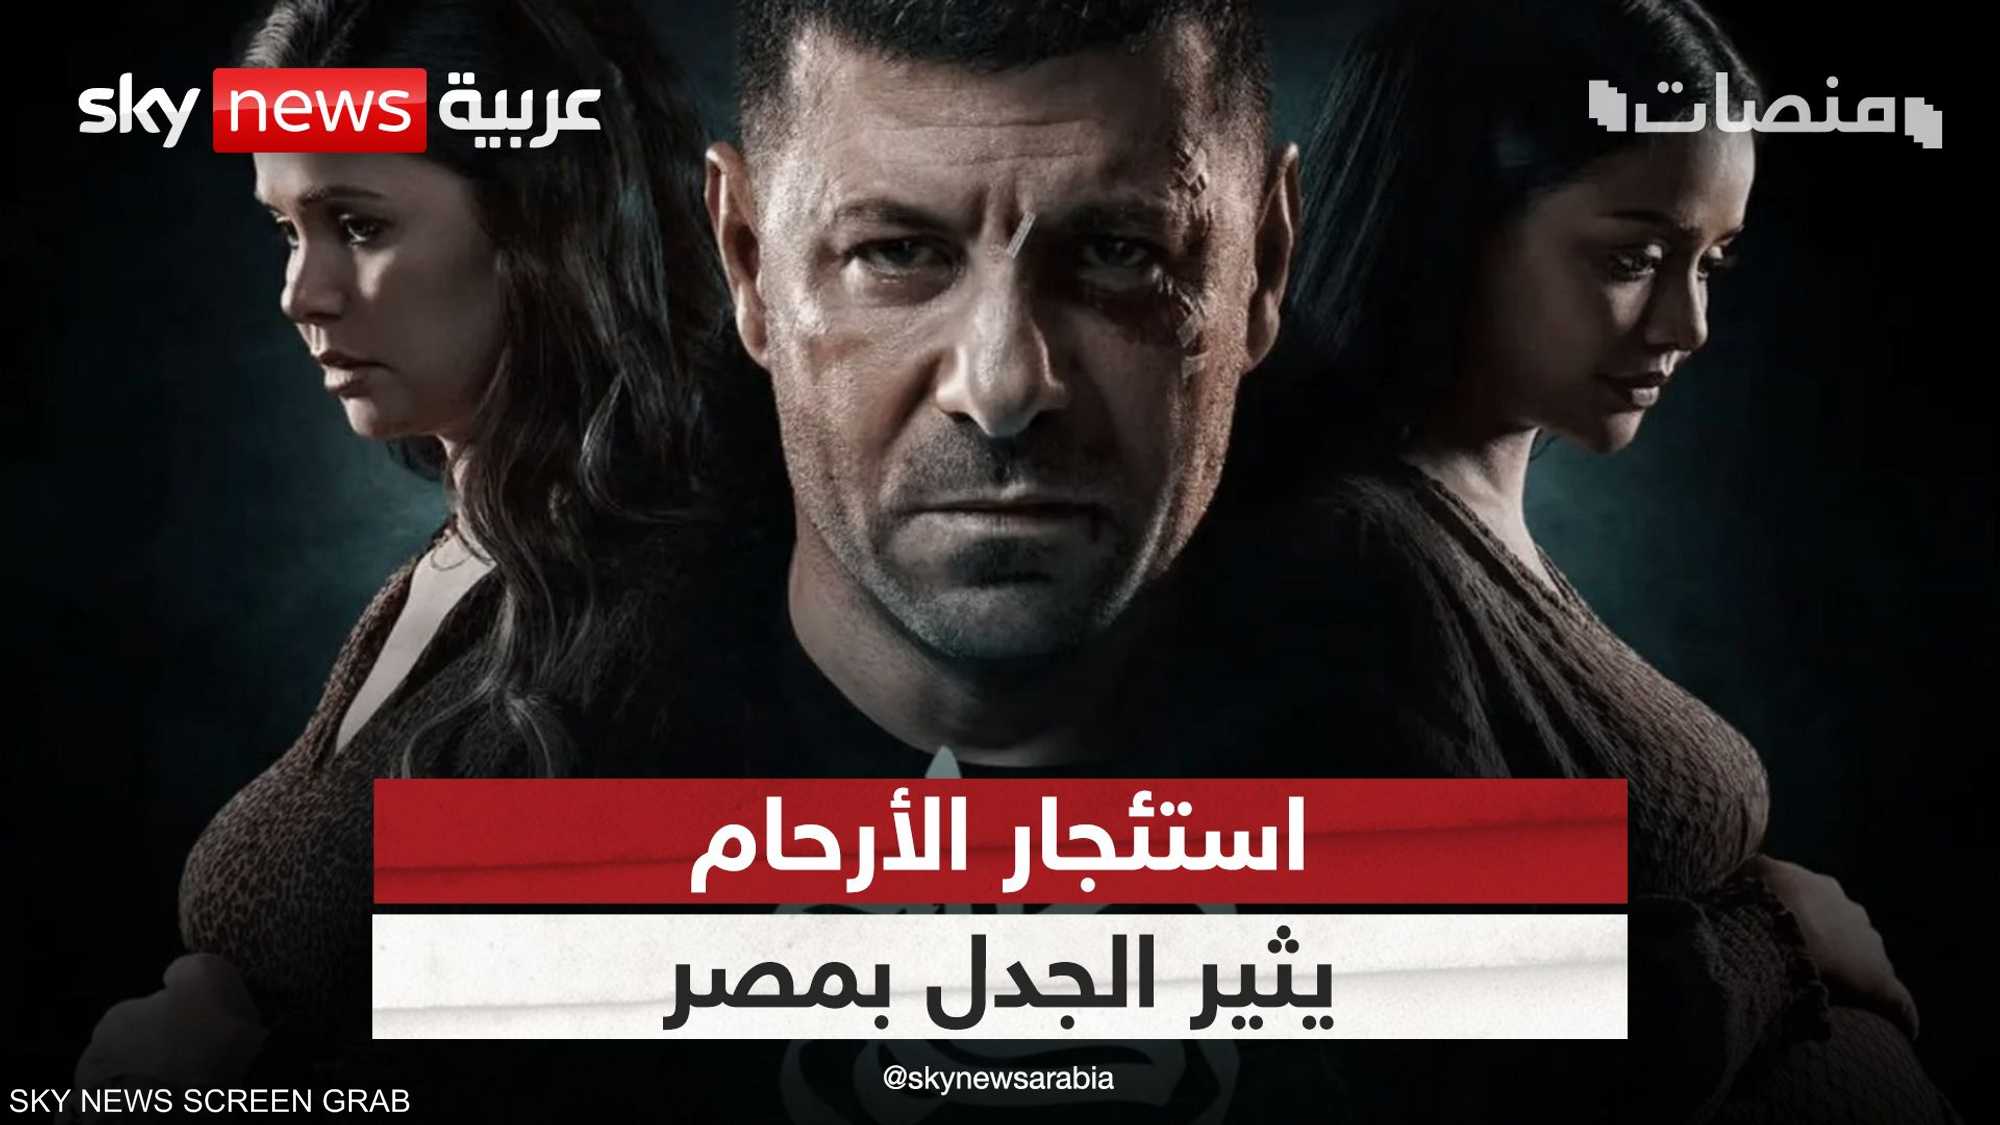 ردود فعل واسعة على مسلسل مصري يناقش قضية "استئجار الأرحام"